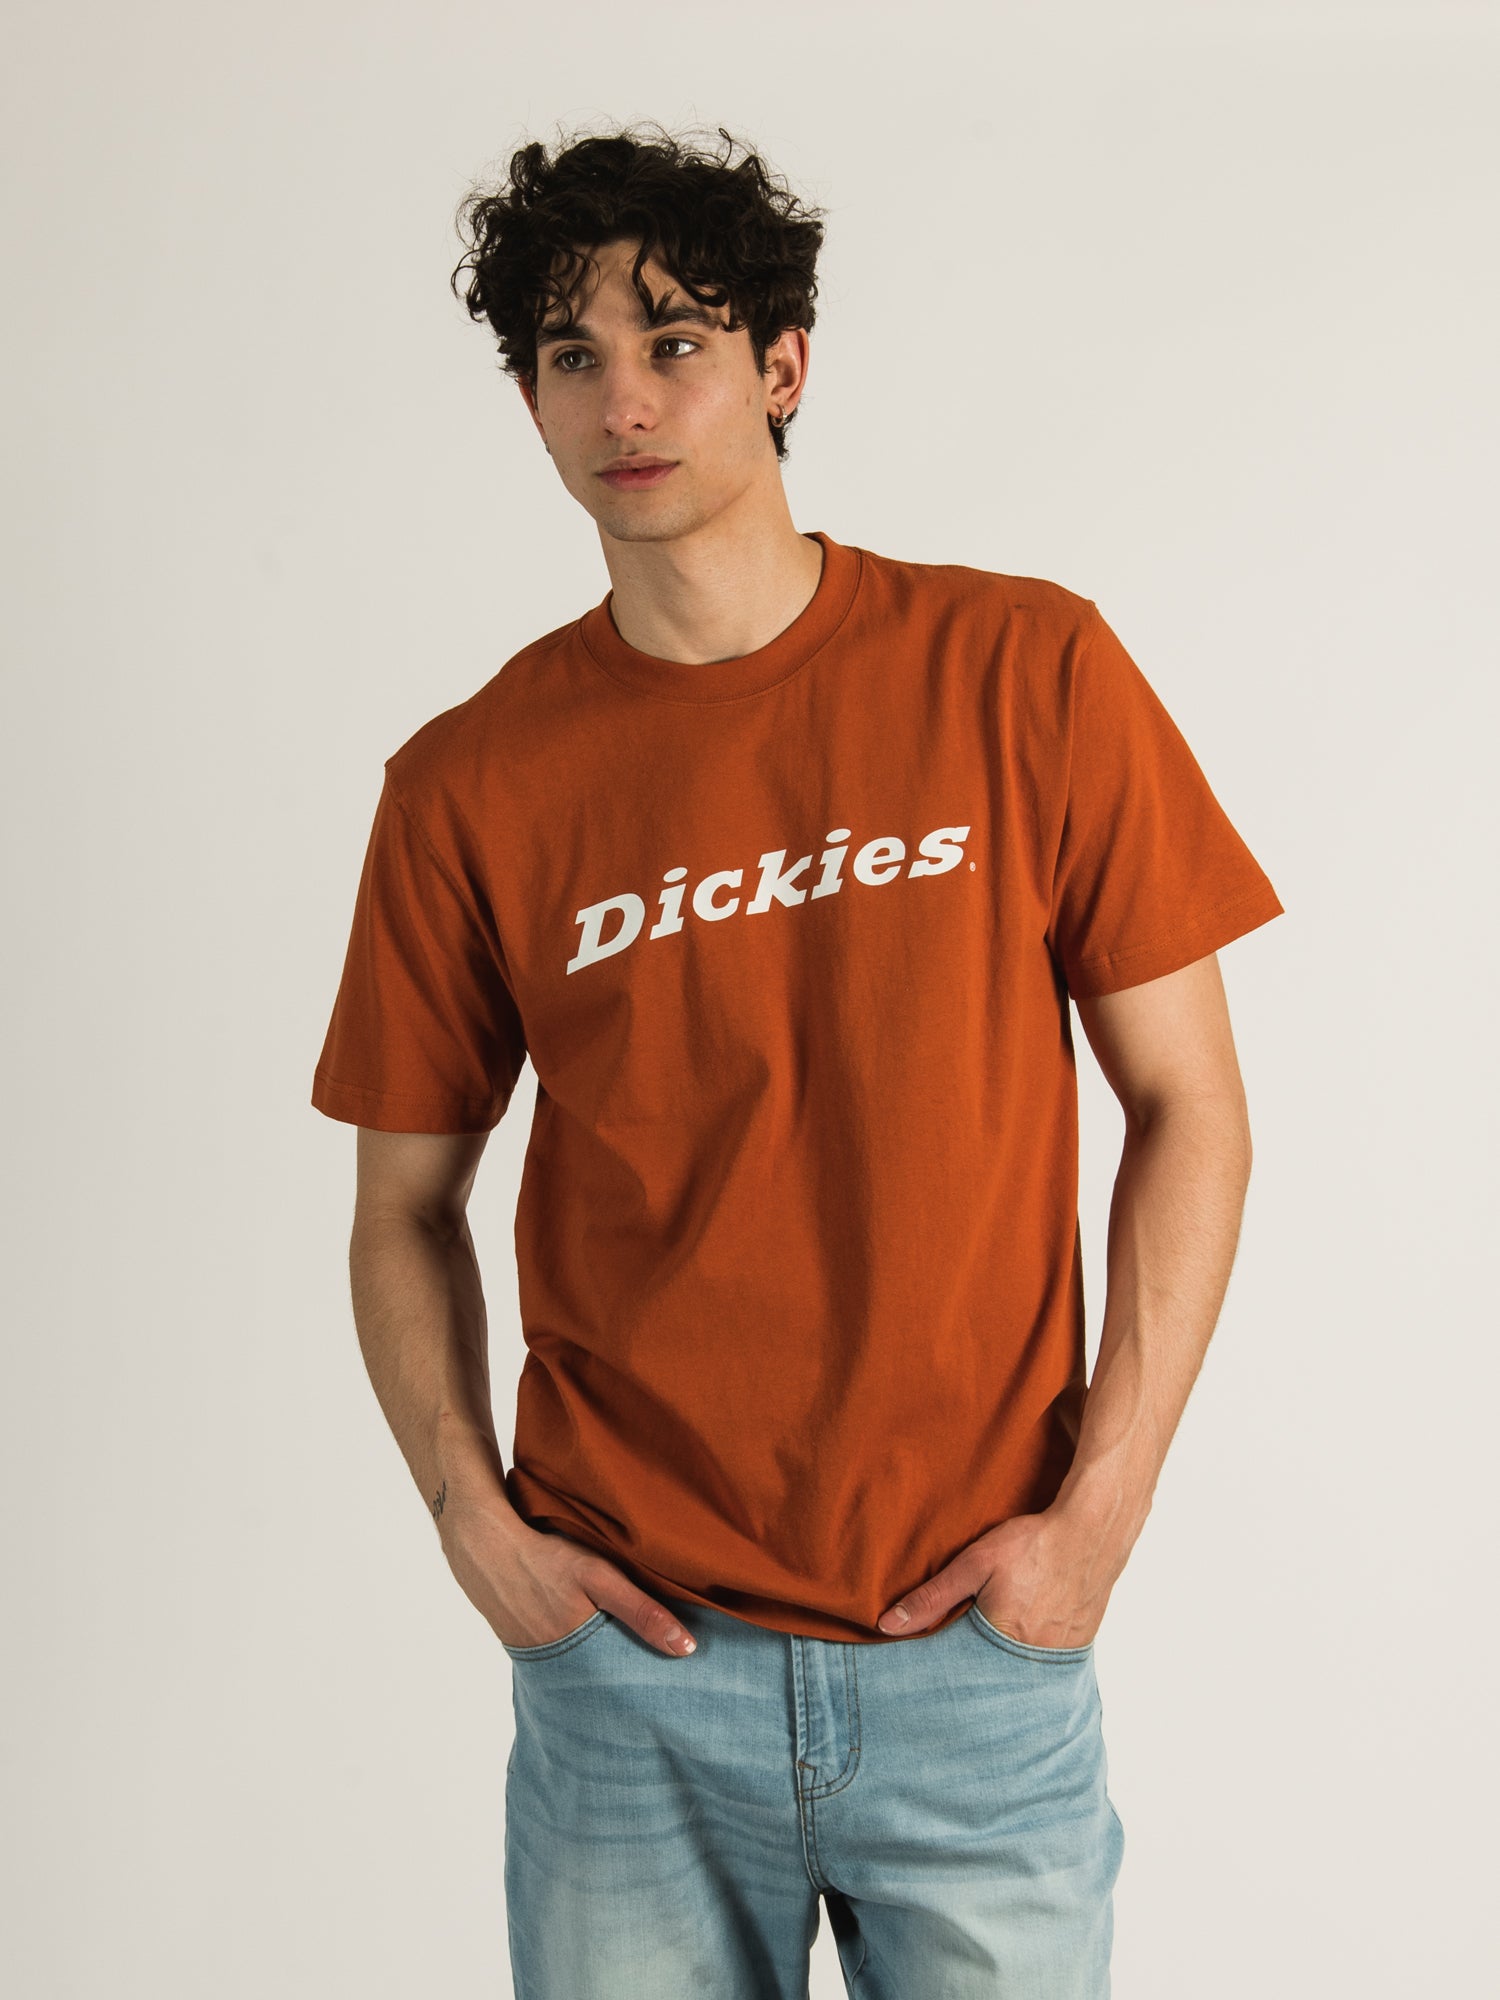 Dickies - Tees, Hoodies, Pants, Hats & more Boathouse